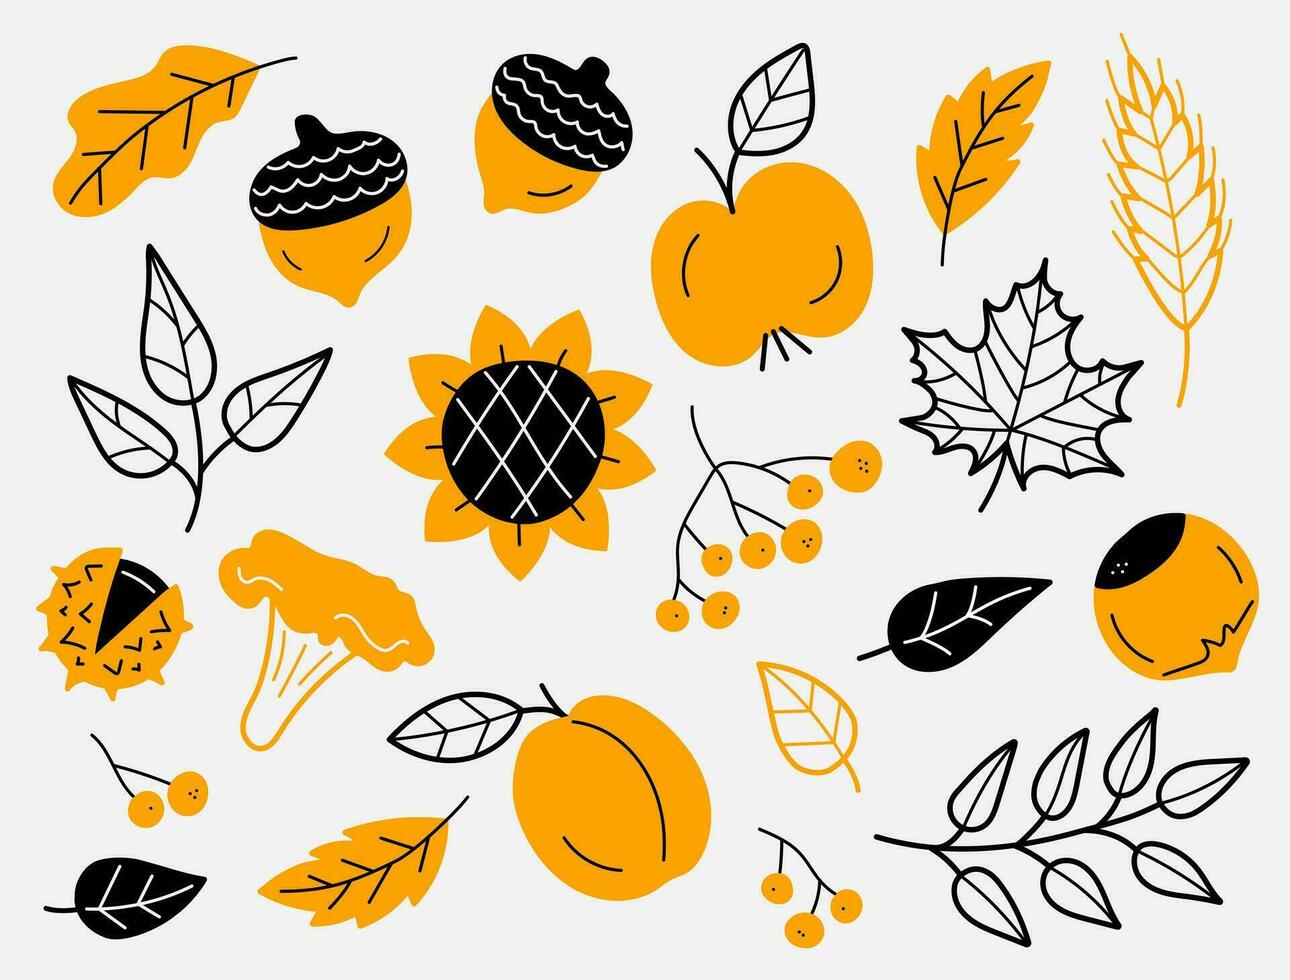 Herbst Ernte Symbole. einstellen von Herbst Elemente im schwarz und Orange Farben. Blätter, Beeren, Früchte, Gemüse, Pilze, Eicheln. handgemalt, skizzieren. Vektor Illustration im Gekritzel Stil.